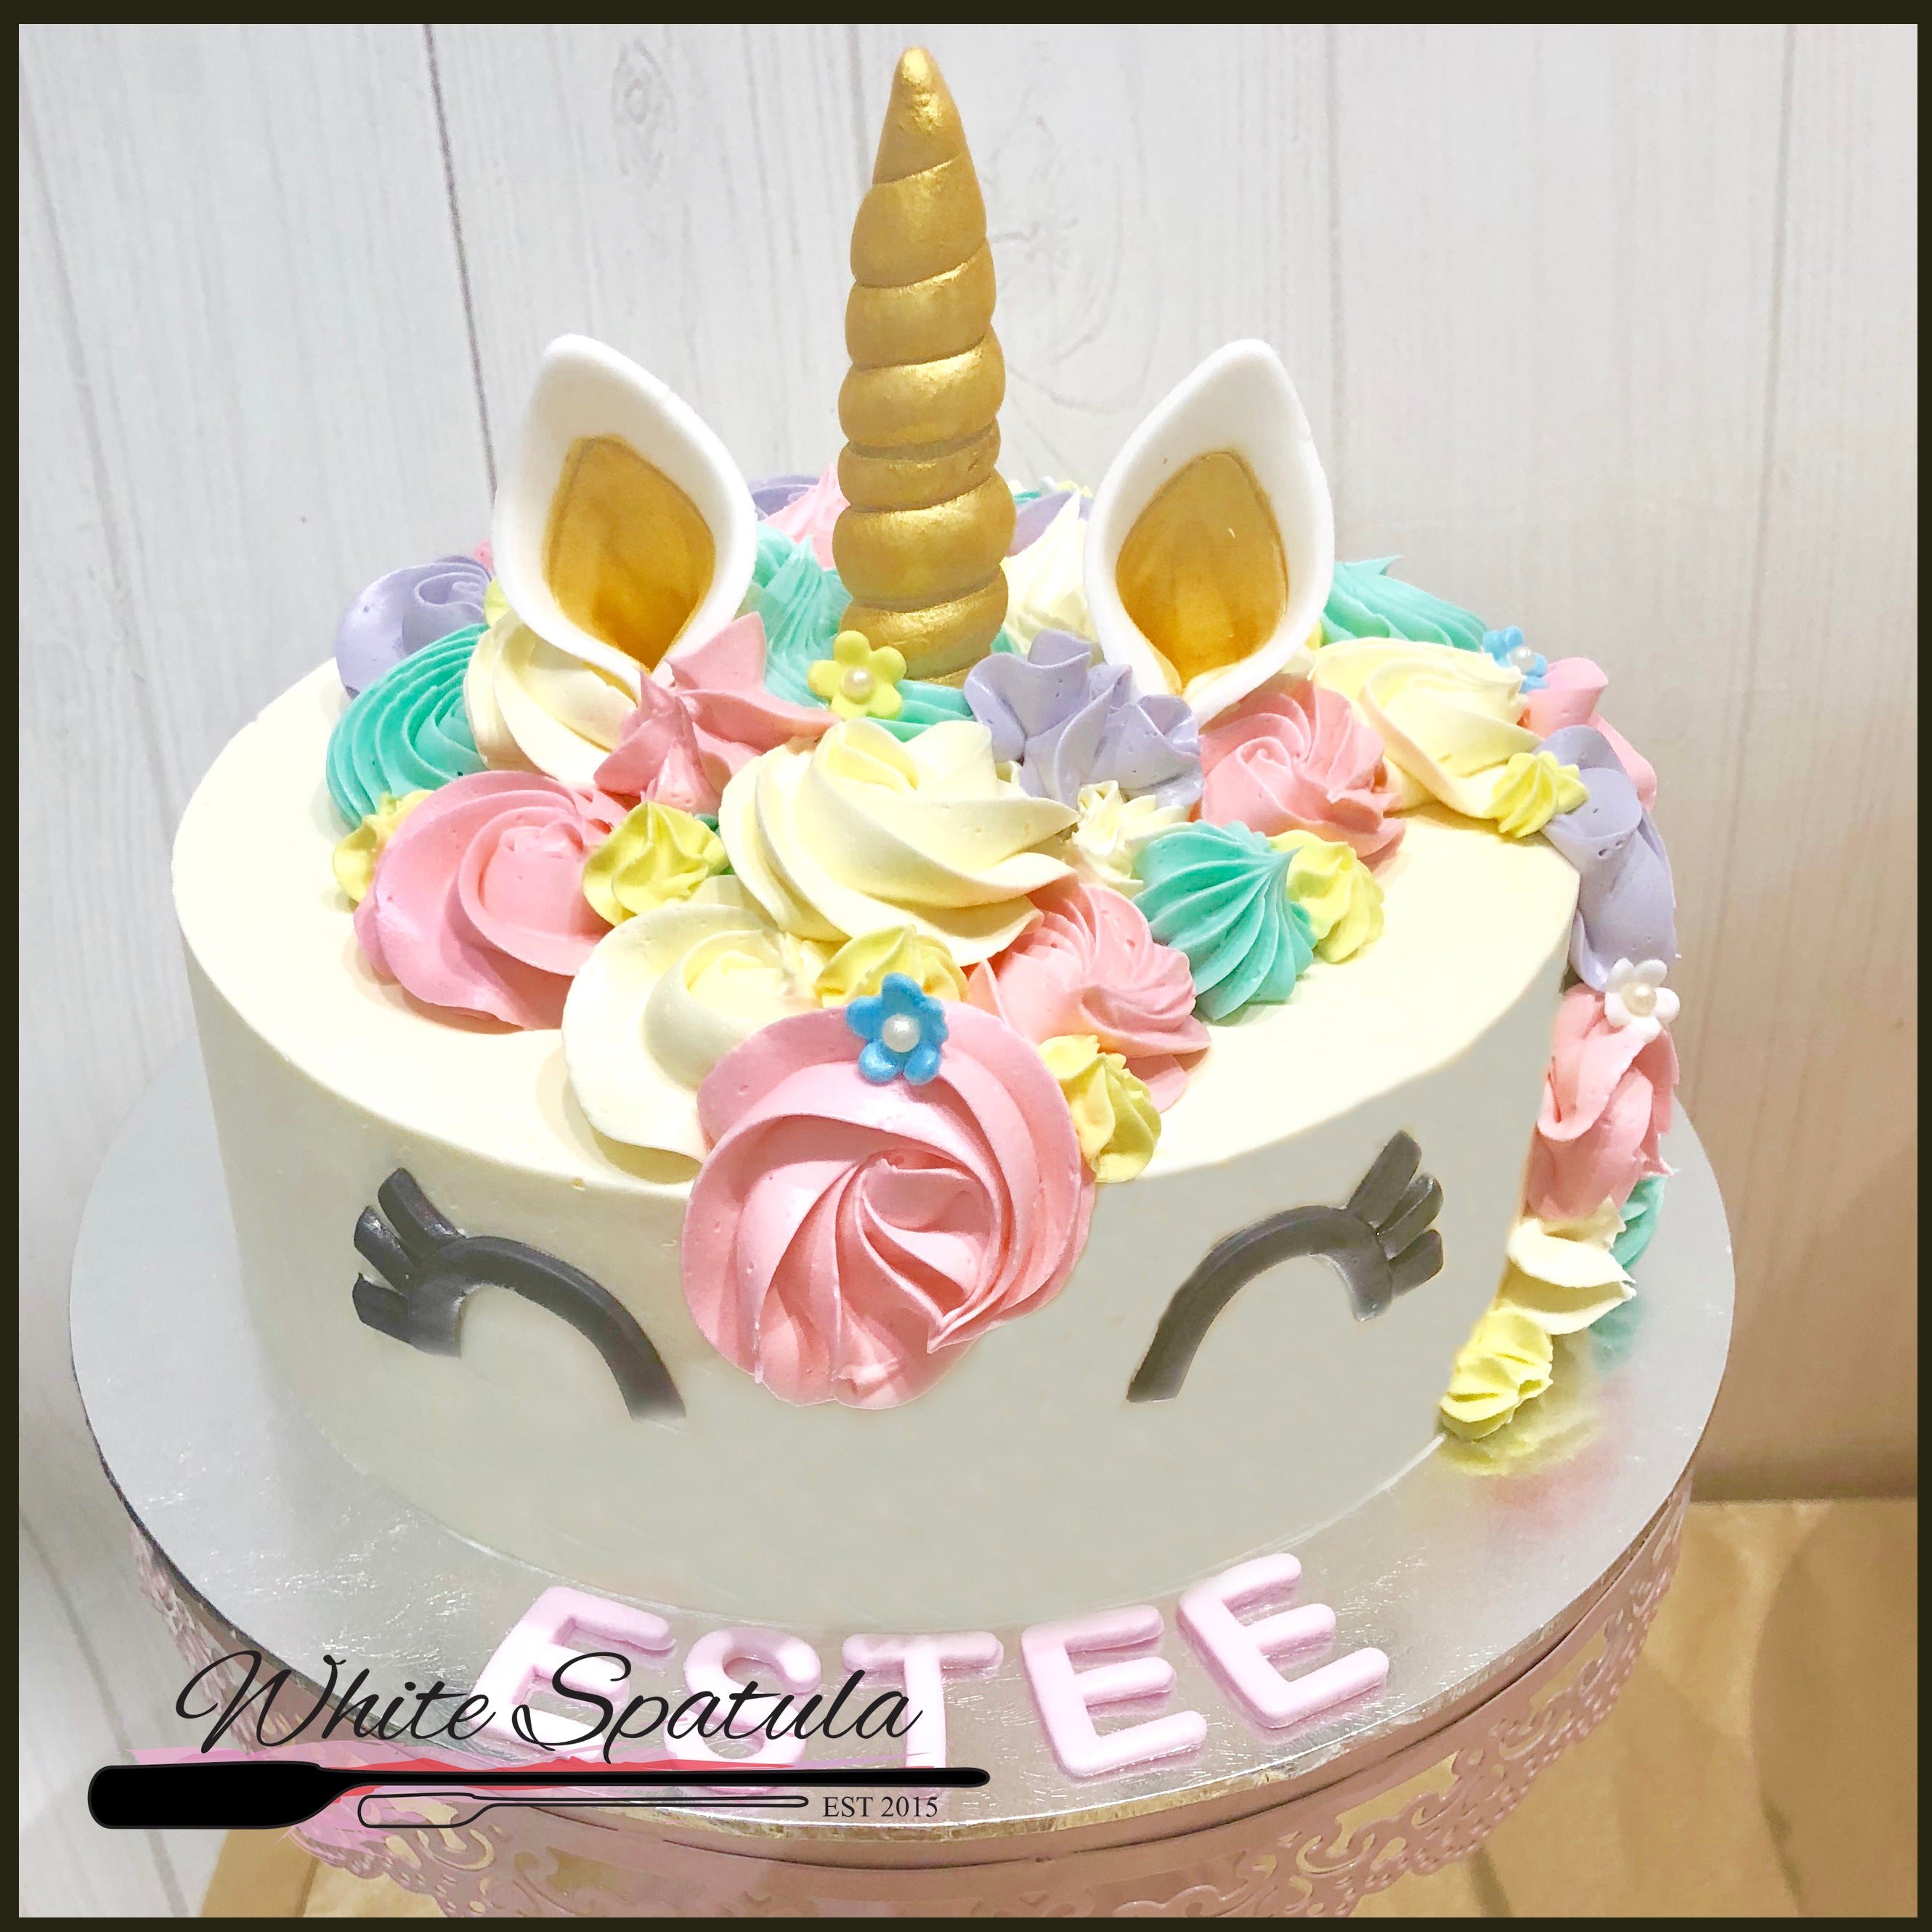 Fondant covered cake with Rainbow Unicorn decor - Buns Bakery